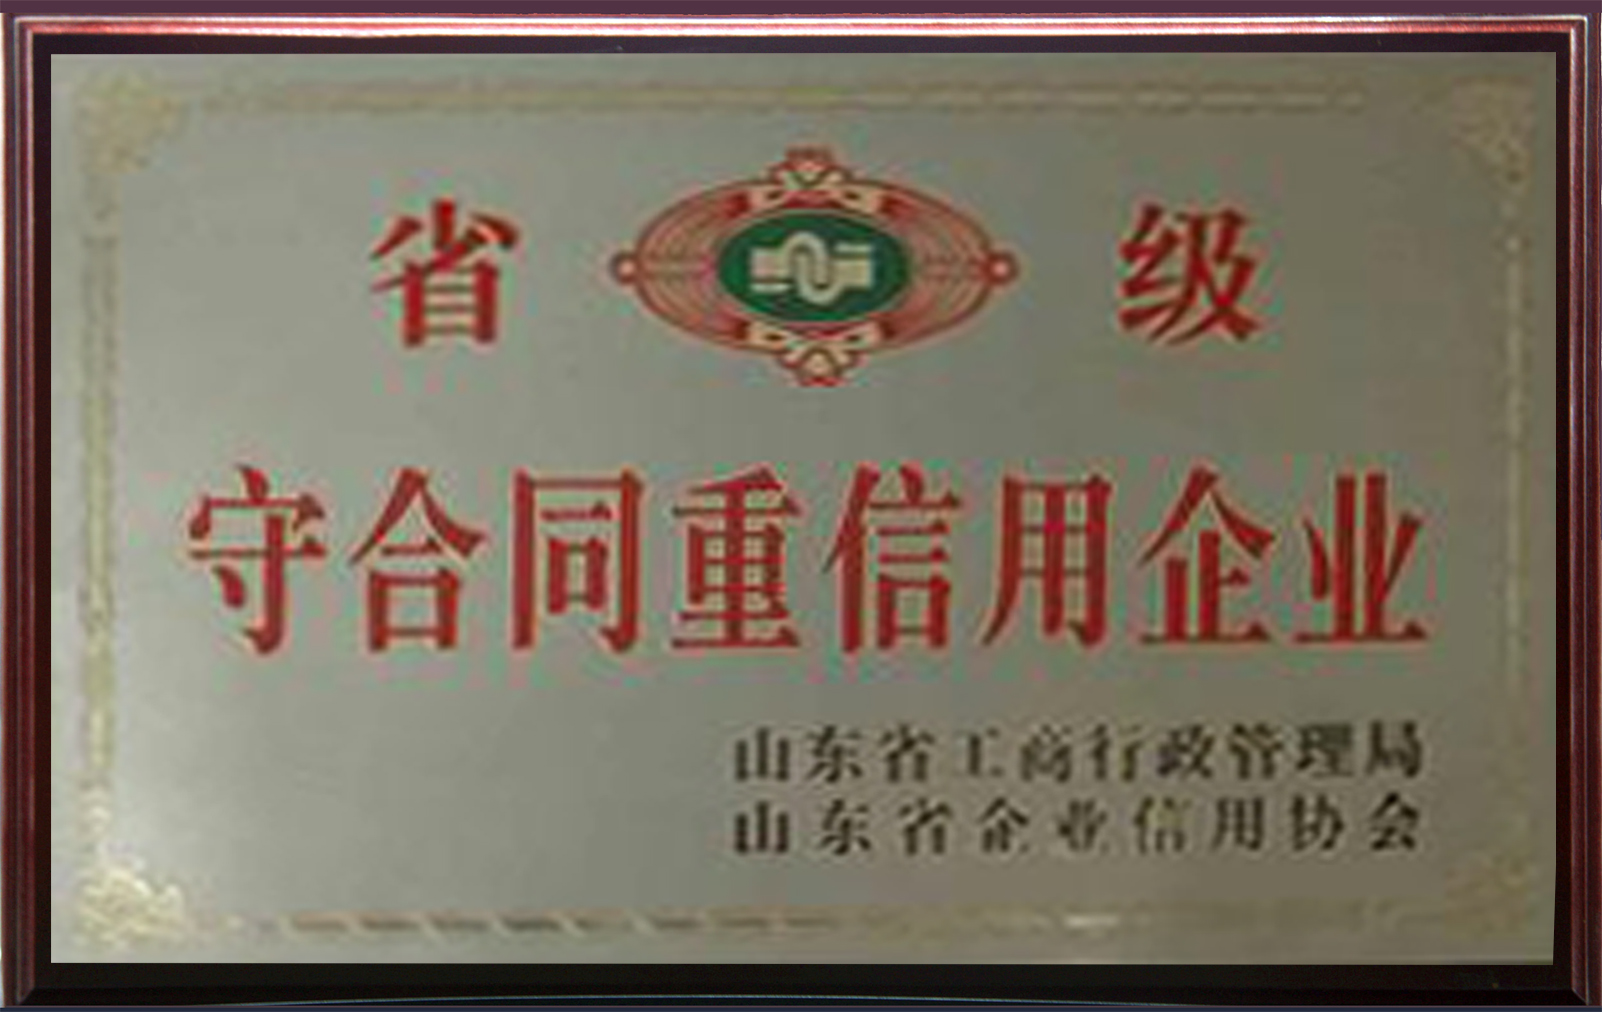 山东省鲁宝厨业有限公司蝉联“守合同重信用”企业荣誉称号